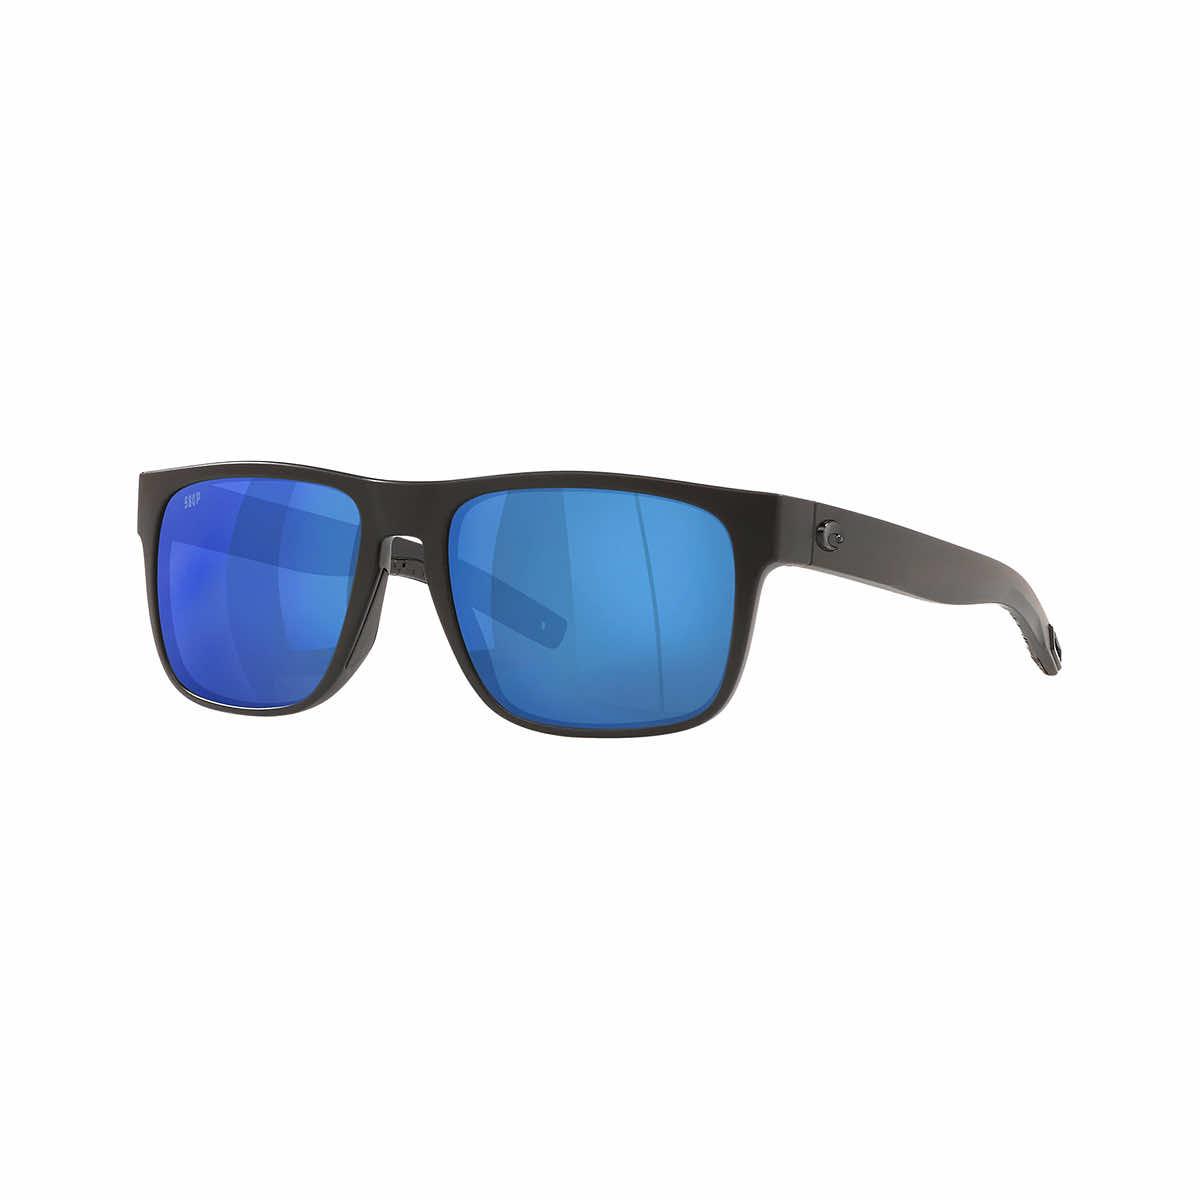  Spearo 580p Sunglasses - Polarized Plastic